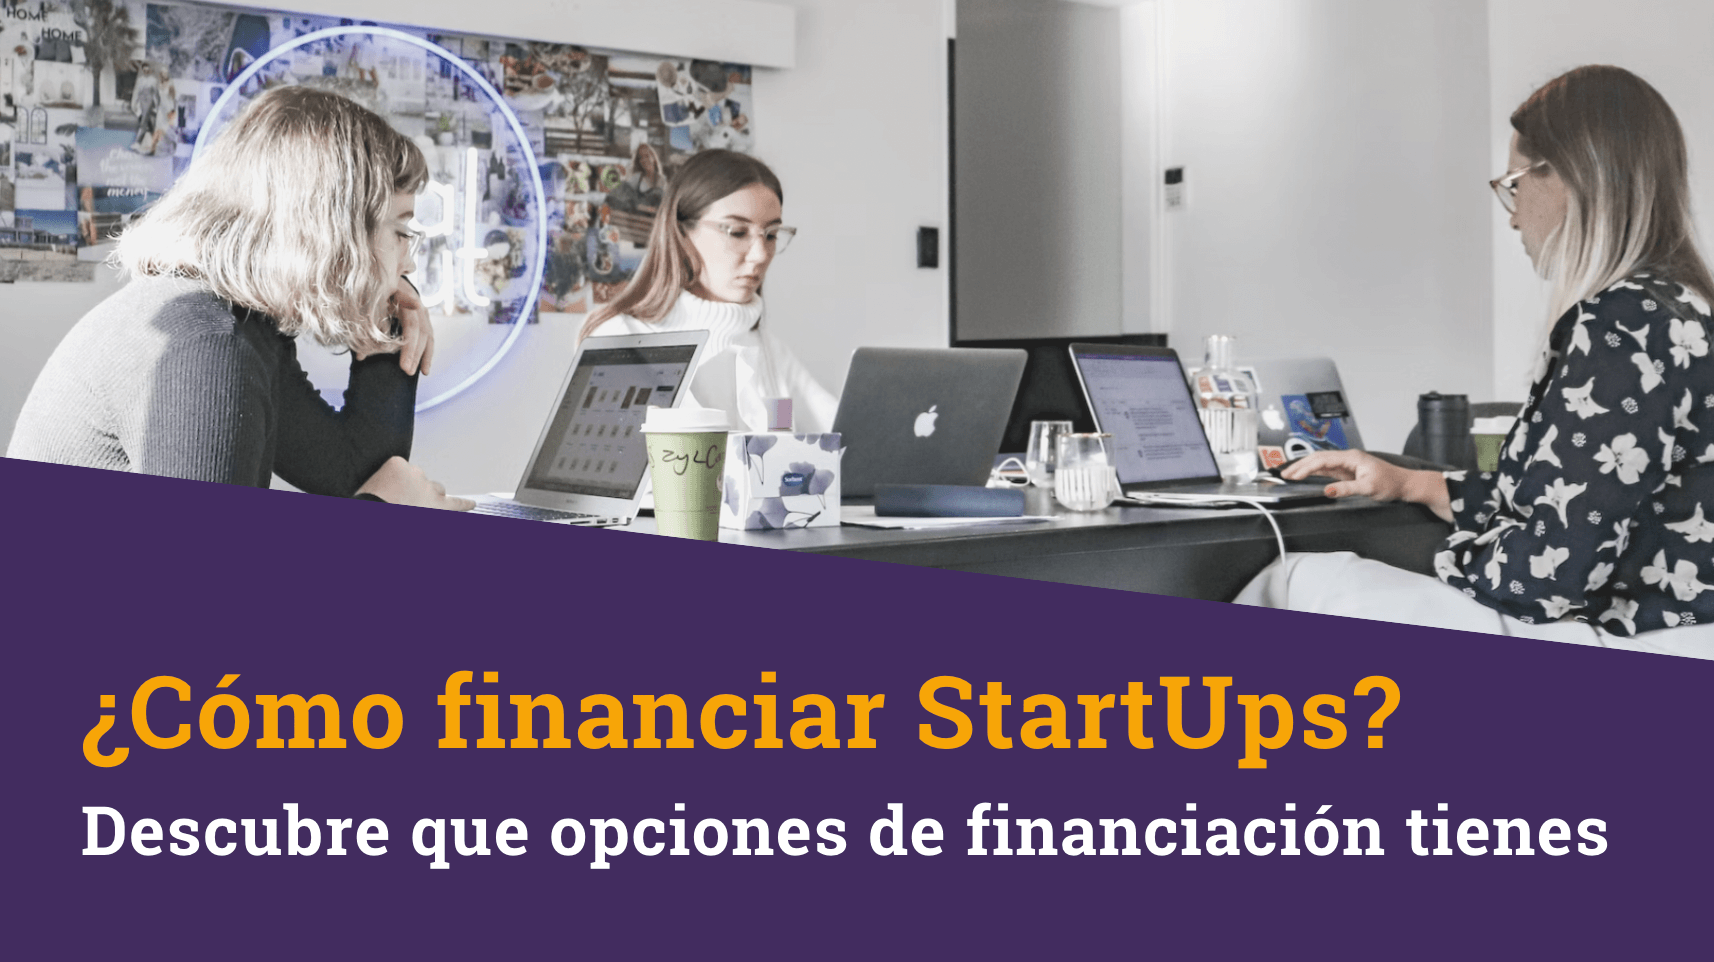 ¿Cómo financiar StartUps? Descubre que opciones de financiación tienes